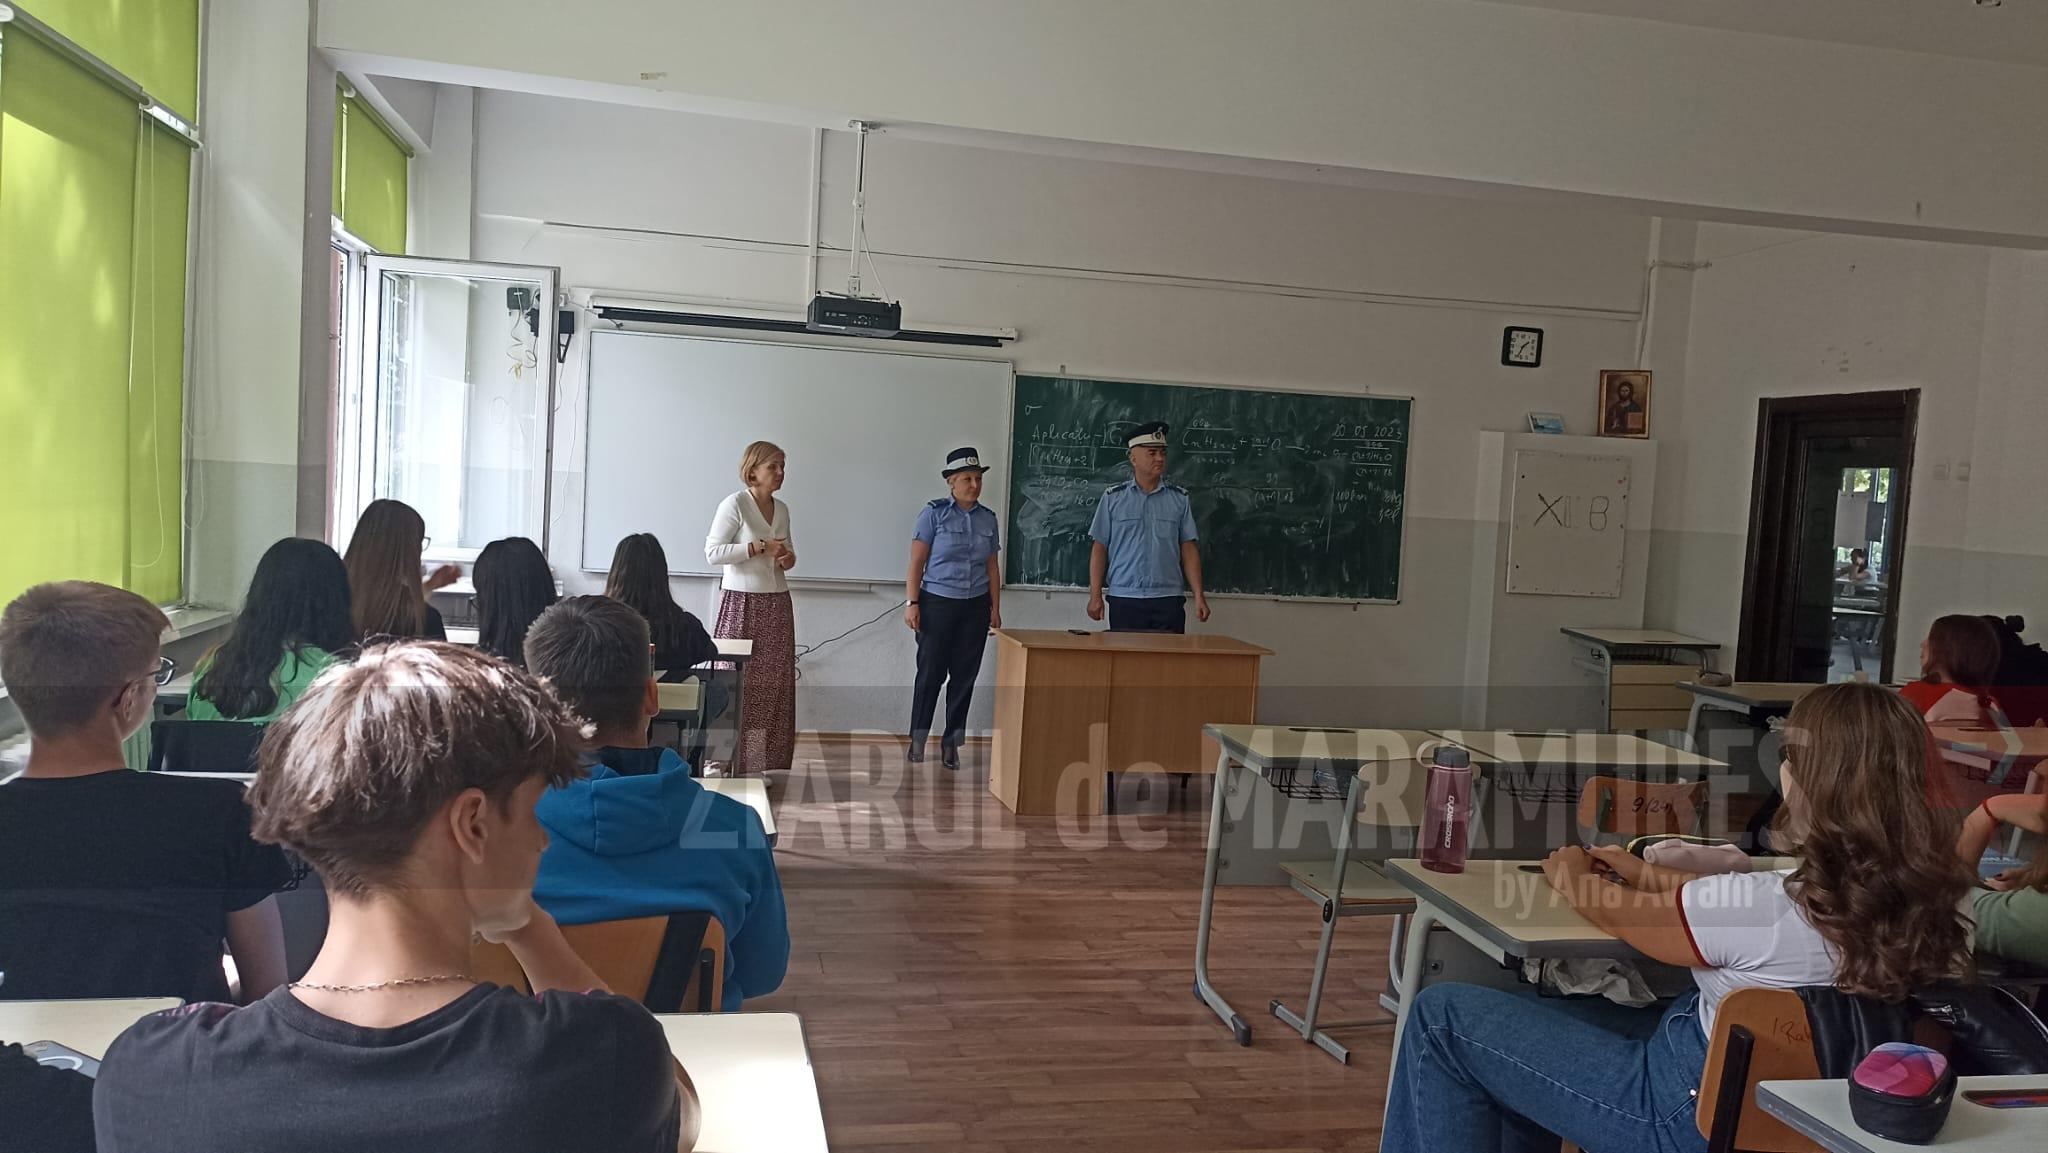 A început noul an școlar, la fel și seria acțiunilor preventiv-informative ale Jandarmeriei Maramureș